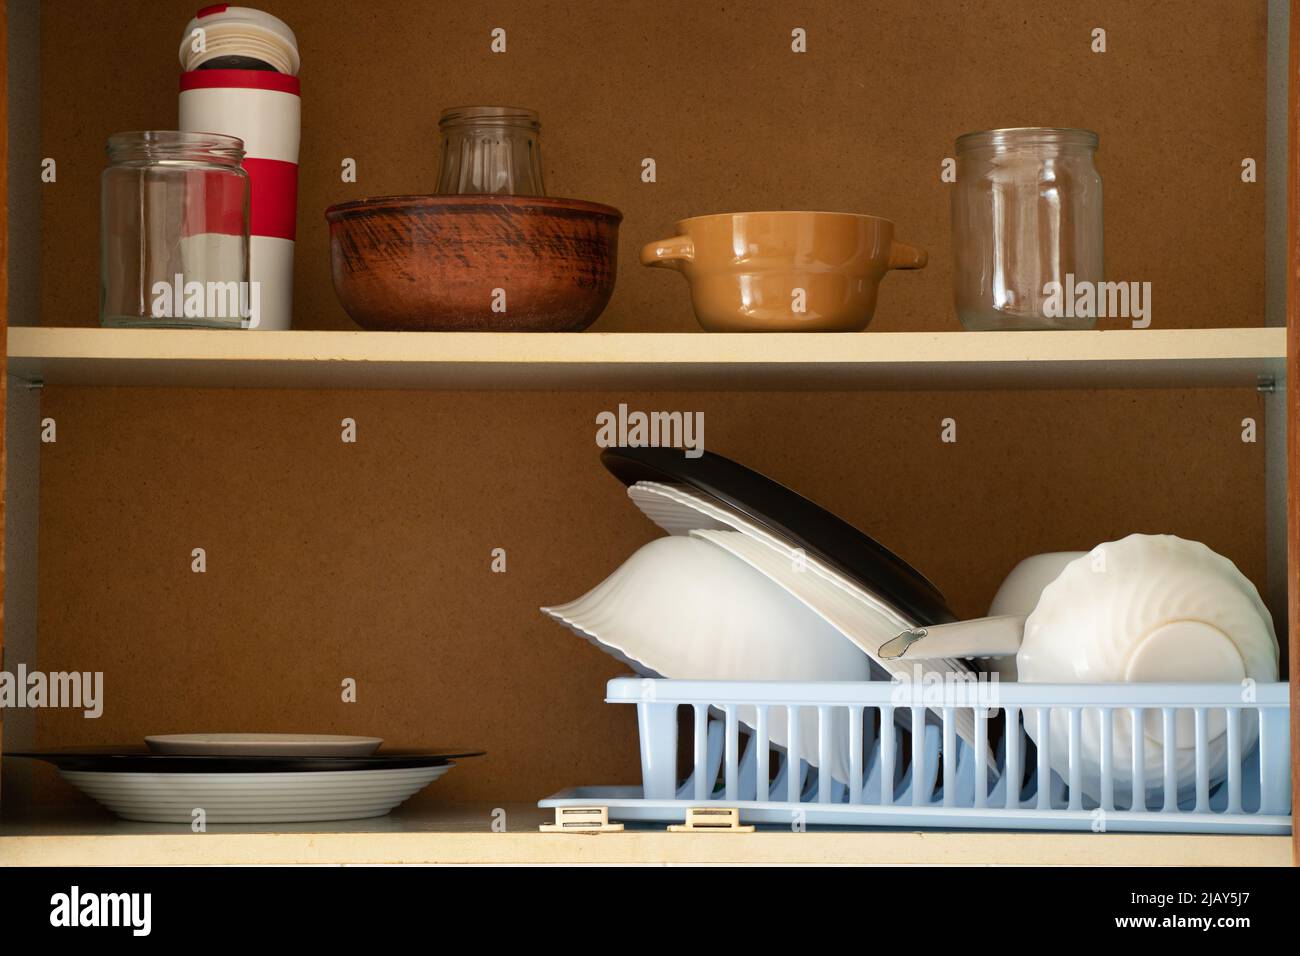 Armoire de cuisine ancienne avec ustensiles dans la cuisine dans l'appartement, plaques de cuisine sur les étagères dans l'armoire Banque D'Images